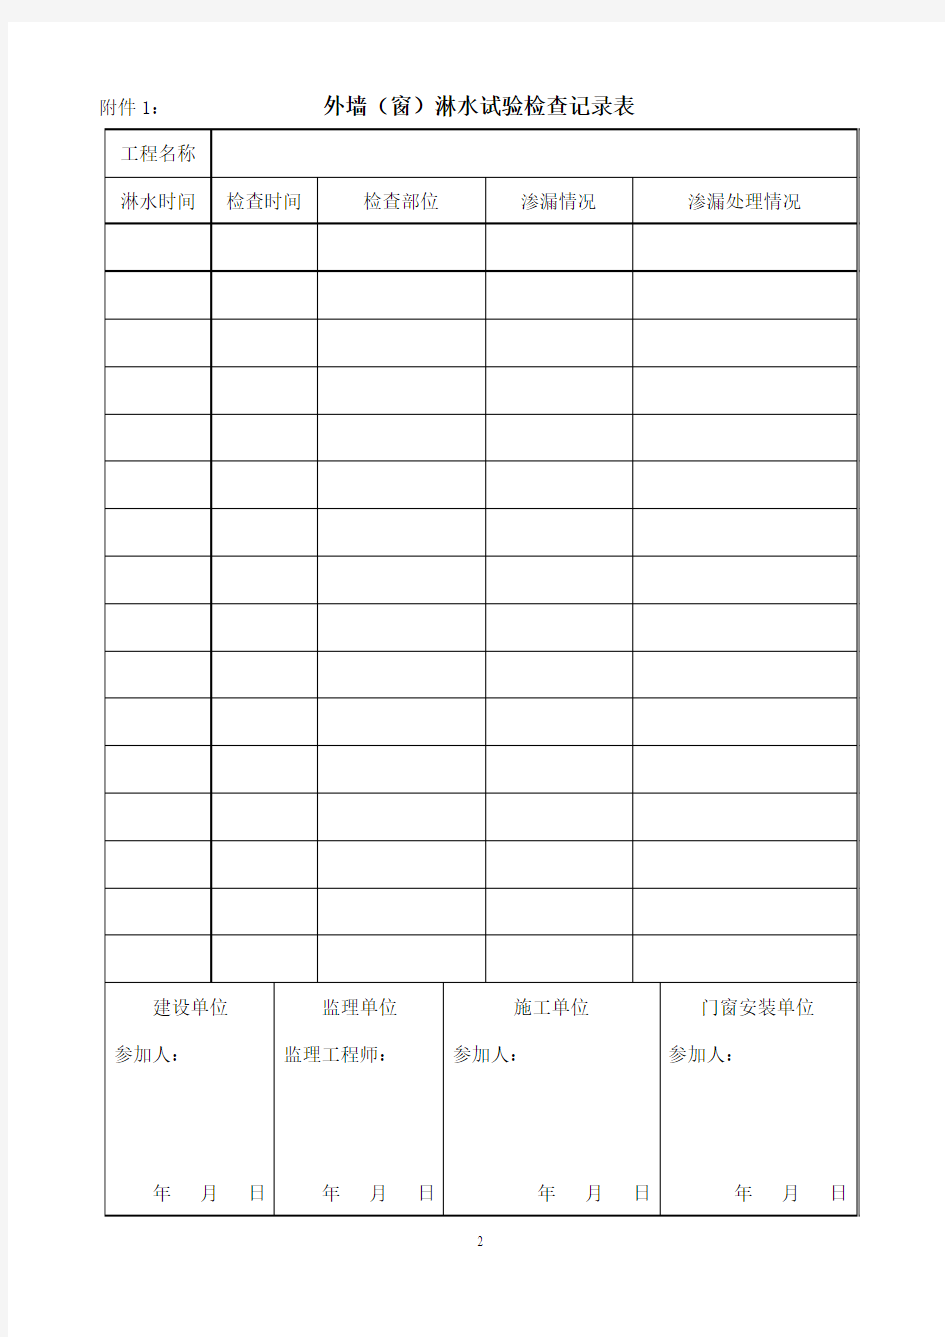 青岛市建筑工程管理局关于推行住宅工程外墙(窗)淋水试验的通知(青建管质字[2008]47号)